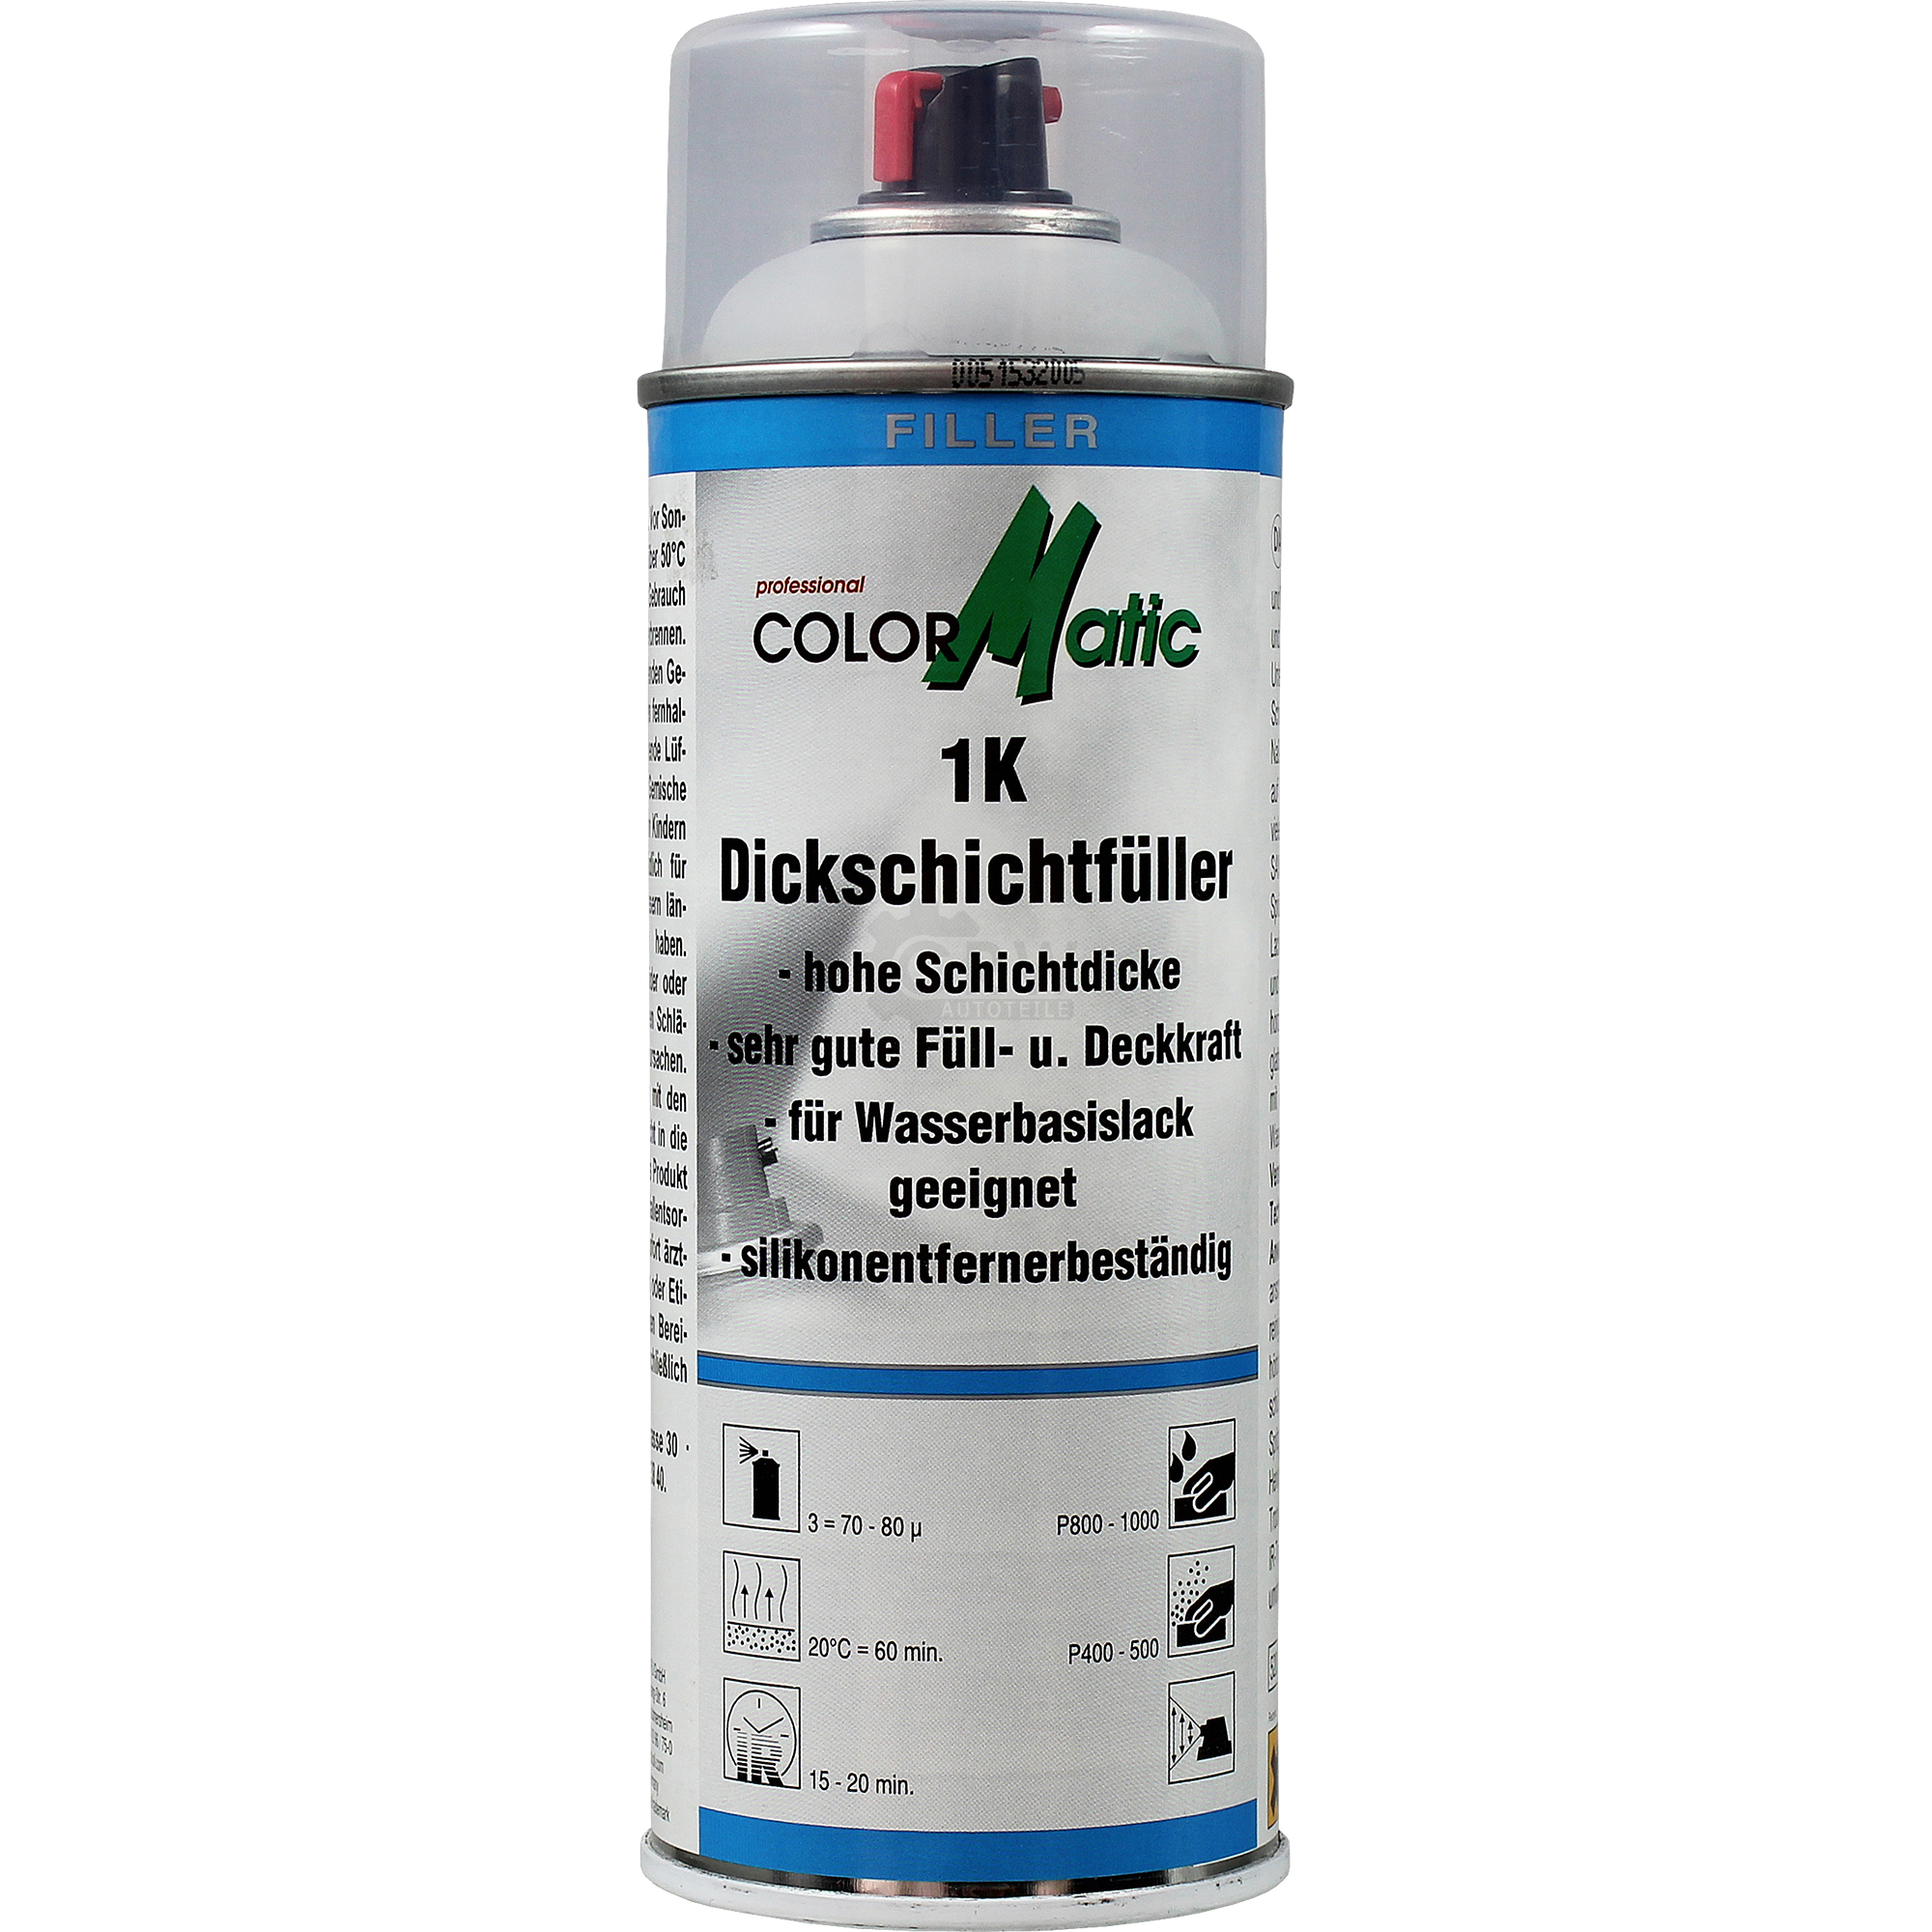 Colormatic Professional 1K Dickschichtfüller Acryl-Füller hellgrau 400ml 375354 